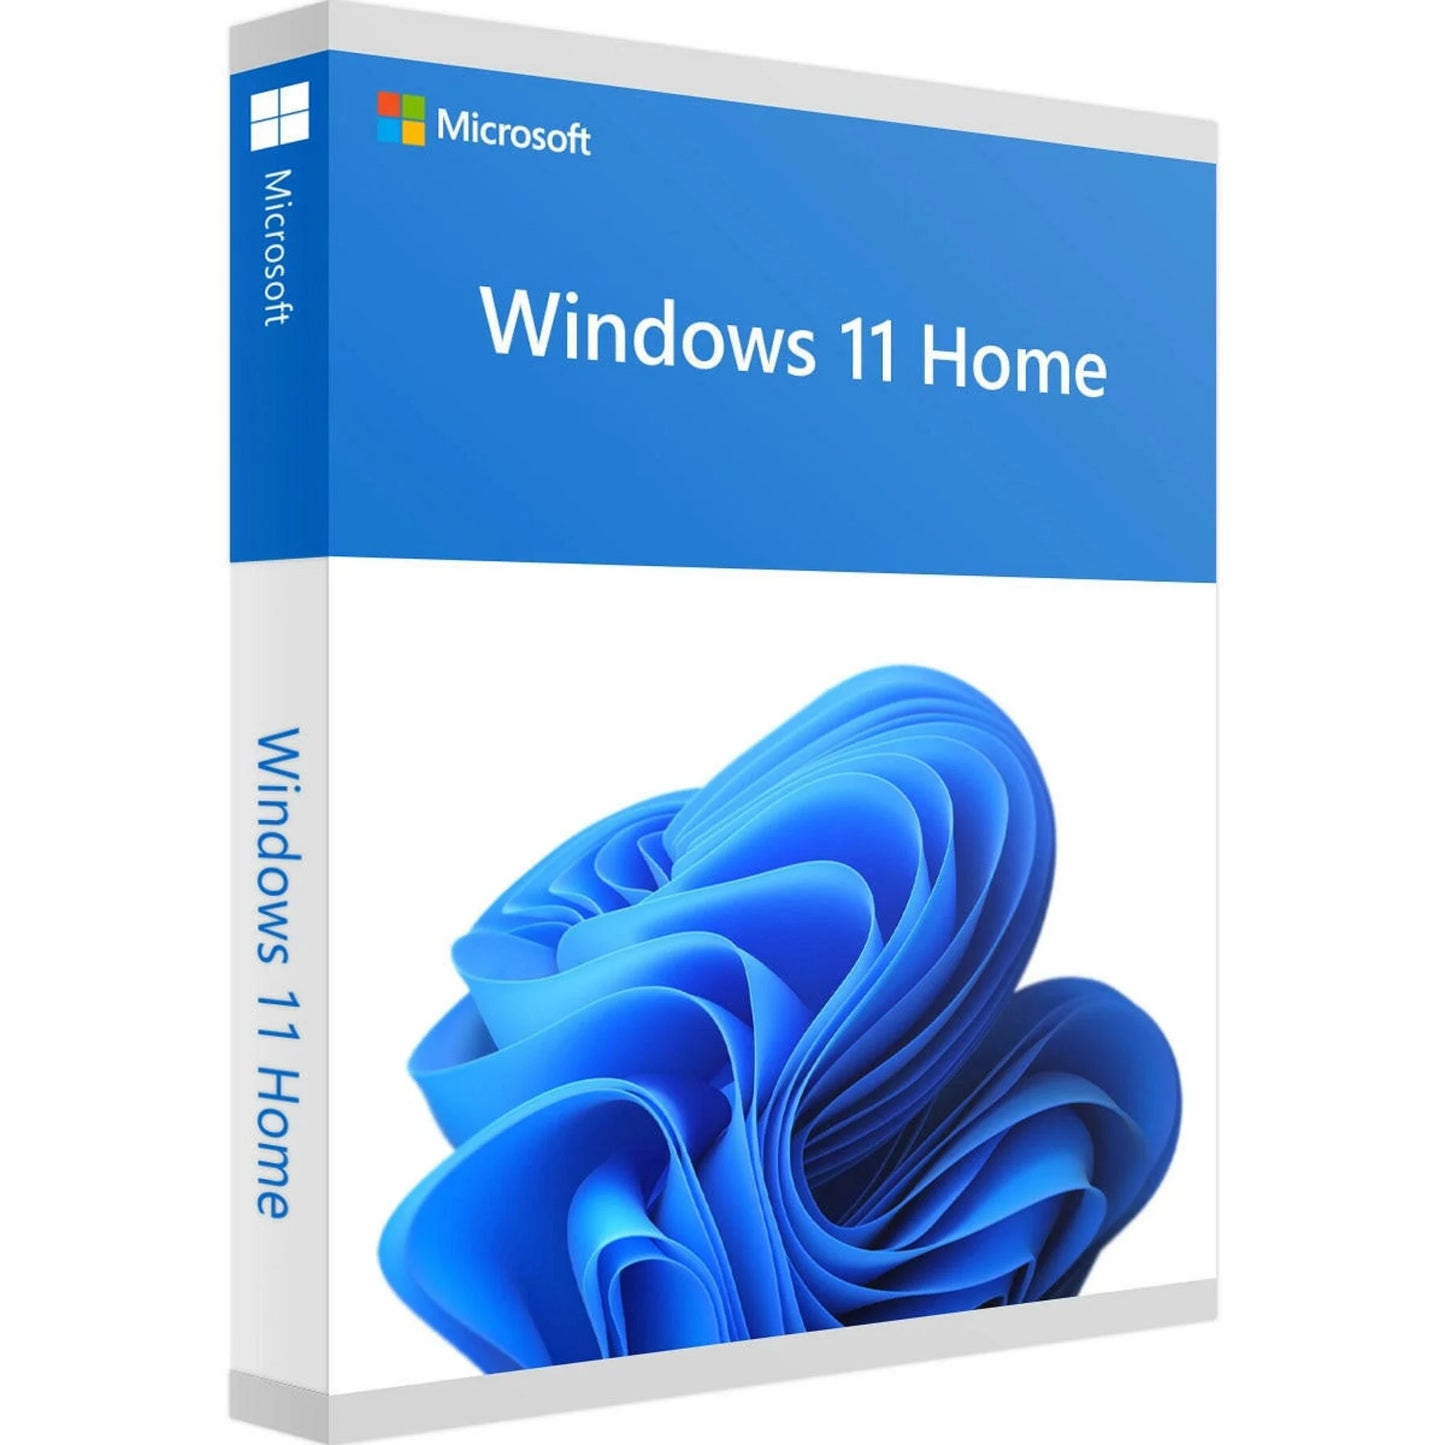 Microsoft Windows 11 Home ist das neueste Betriebssystem von Microsoft und bietet eine intuitive Benutzeroberfläche sowie viele innovative Funktionen. Es wurde speziell für den Einsatz auf Desktop-PCs, Laptops und Tablets entwickelt und bietet eine nahtlose Erfahrung auf allen Geräten. Mit Windows 11 Home können Sie Ihre Arbeit schneller erledigen, besser kommunizieren und Unterhaltung in hoher Qualität genießen.